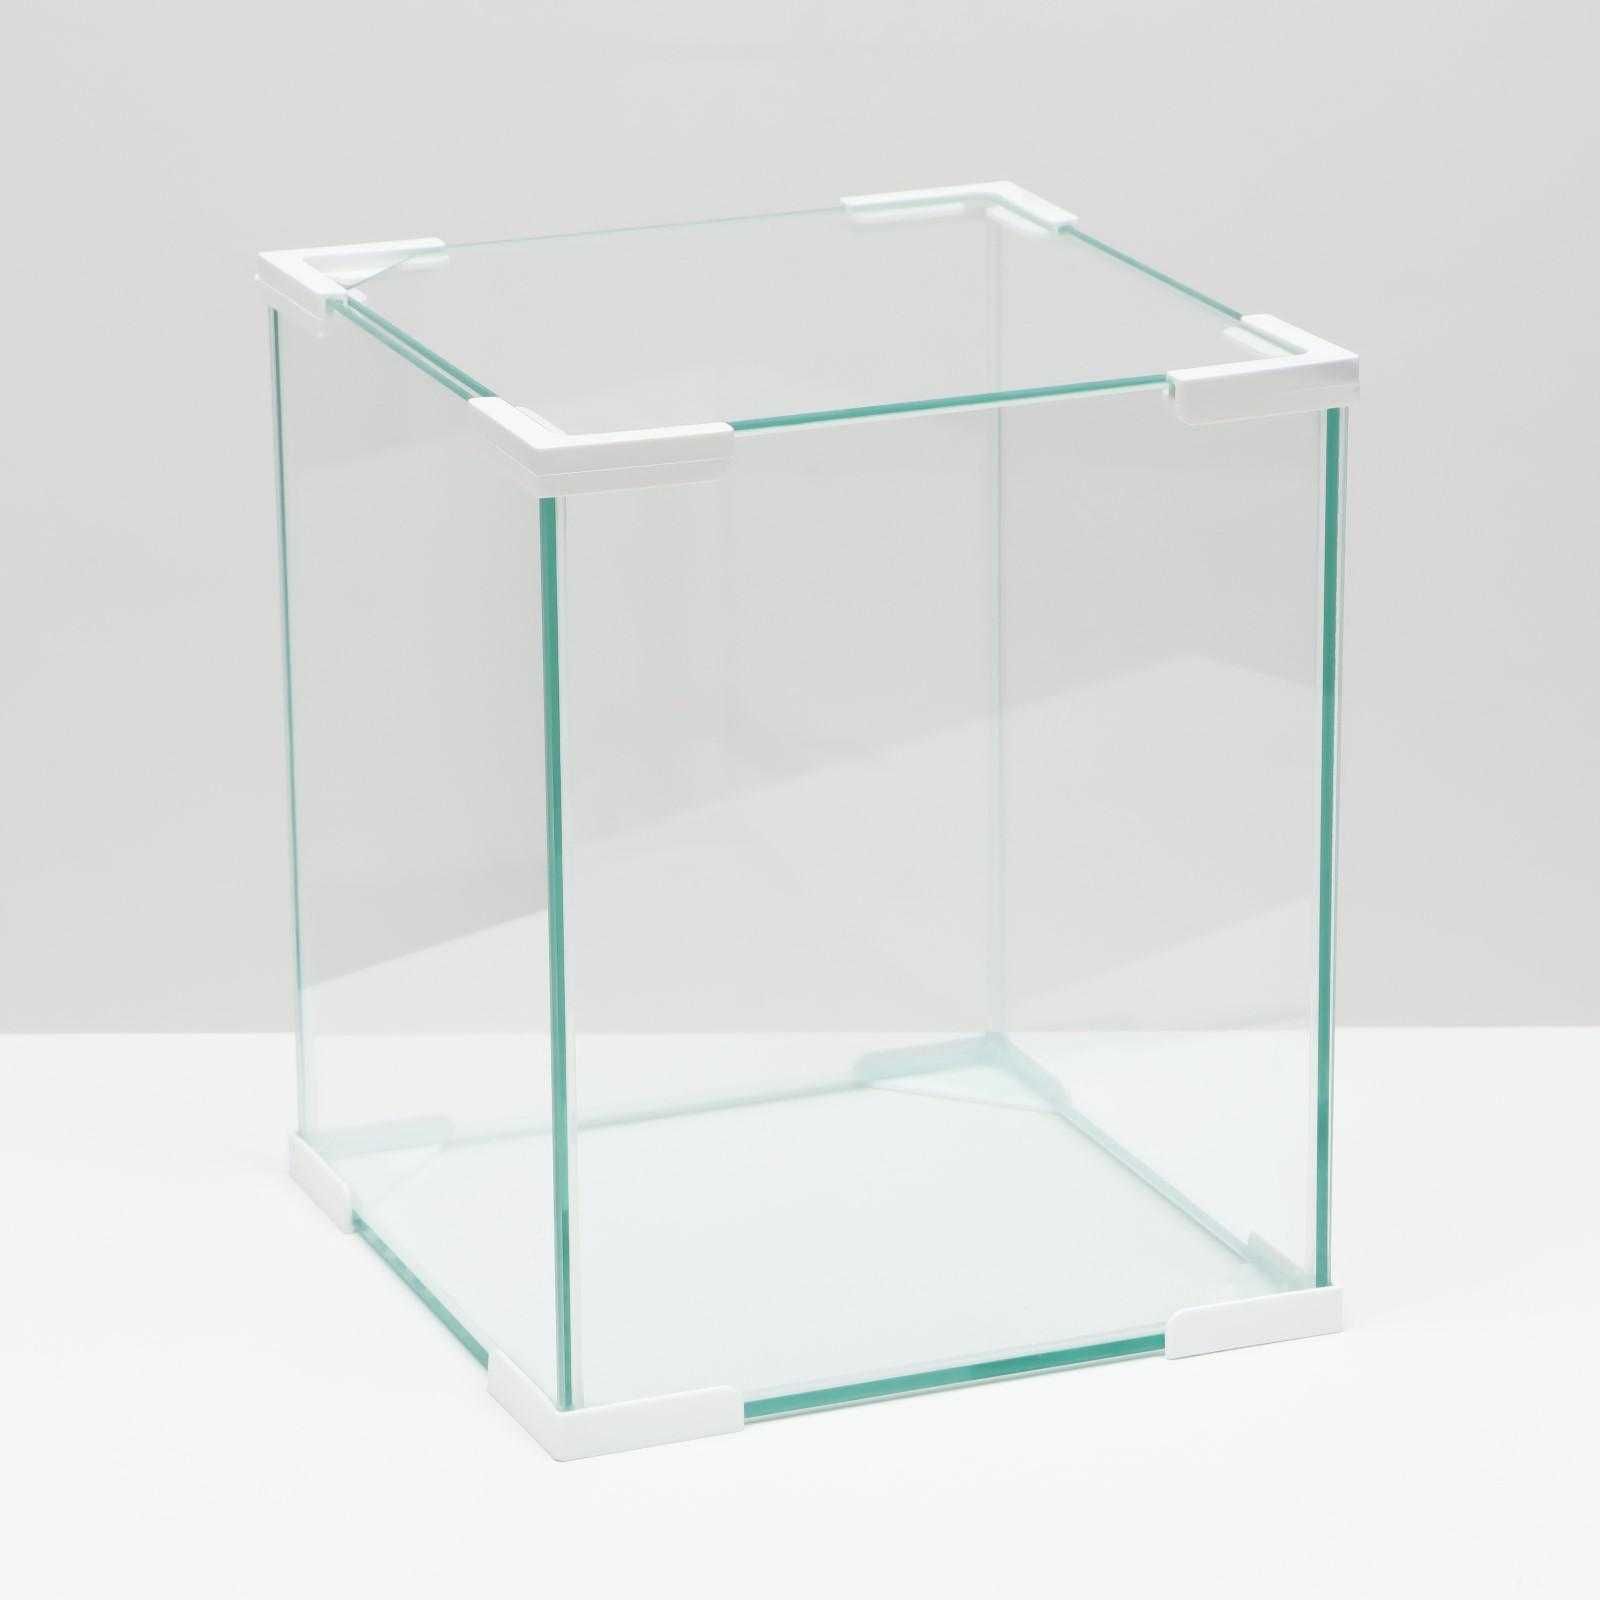 Продам Аквариум Куб белый уголок, покровное стекло, на 19 литров!